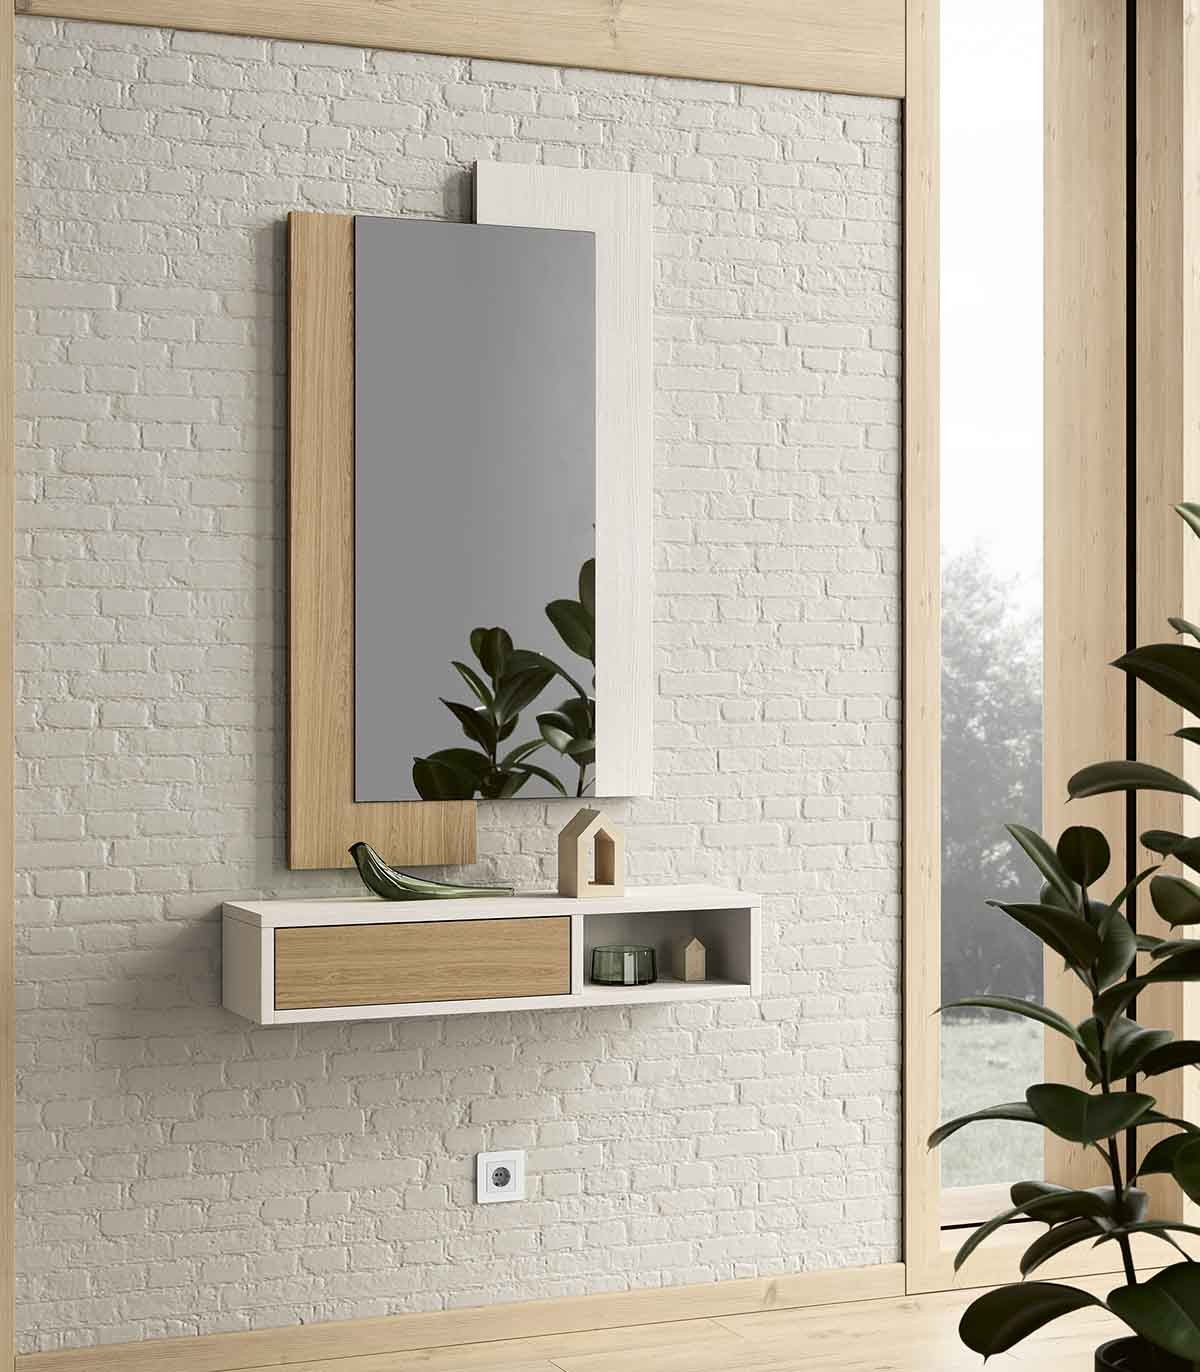 Recibidor de pared horizontal, 1 cajón, espejo colgante, balda